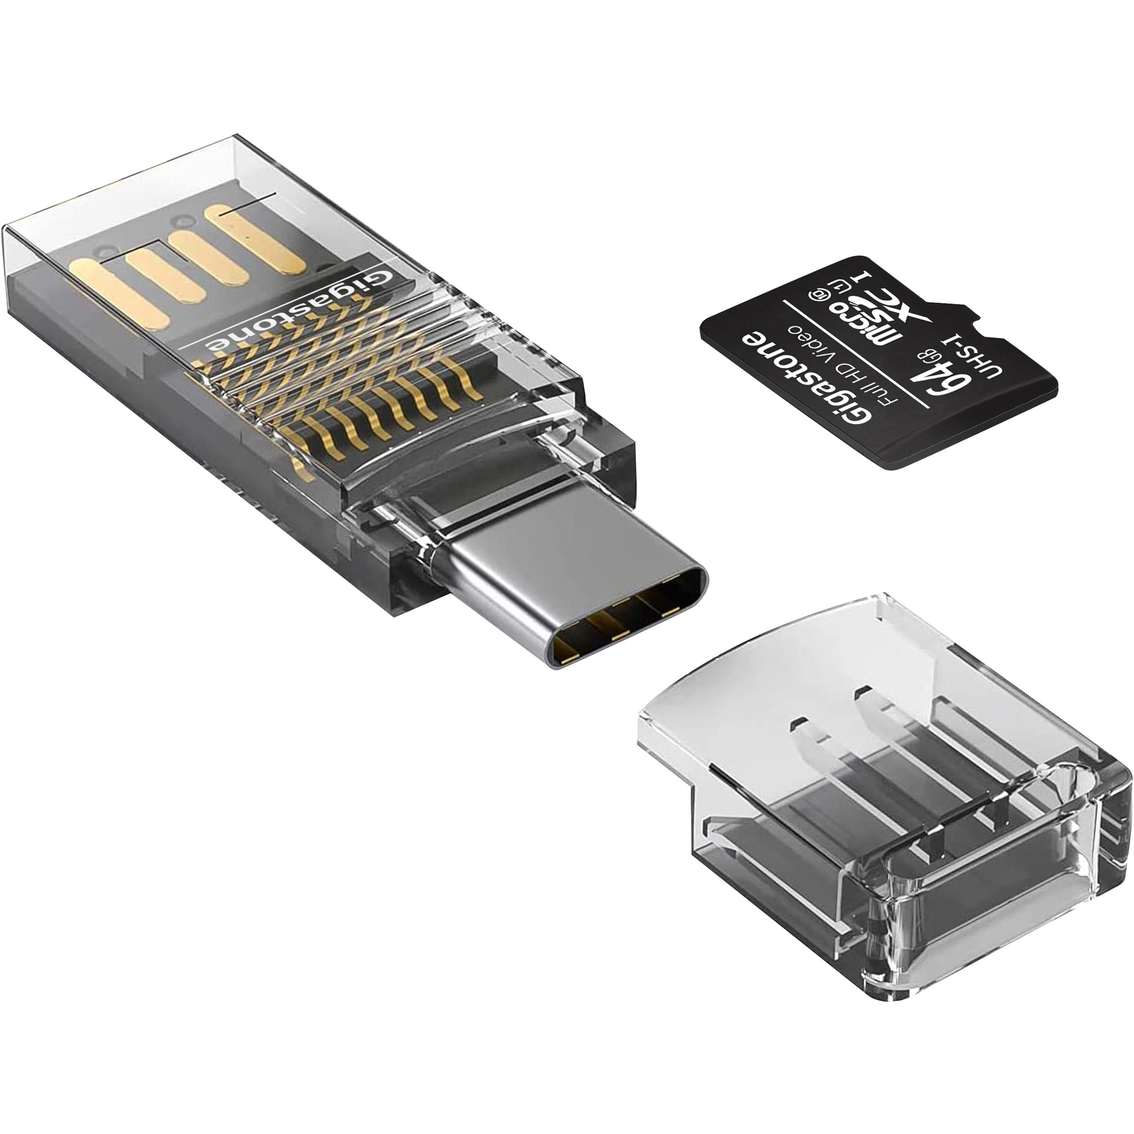 Gigastone 64GB Prime Series microSD Card 4-in-1 Kit - Image 2 of 6